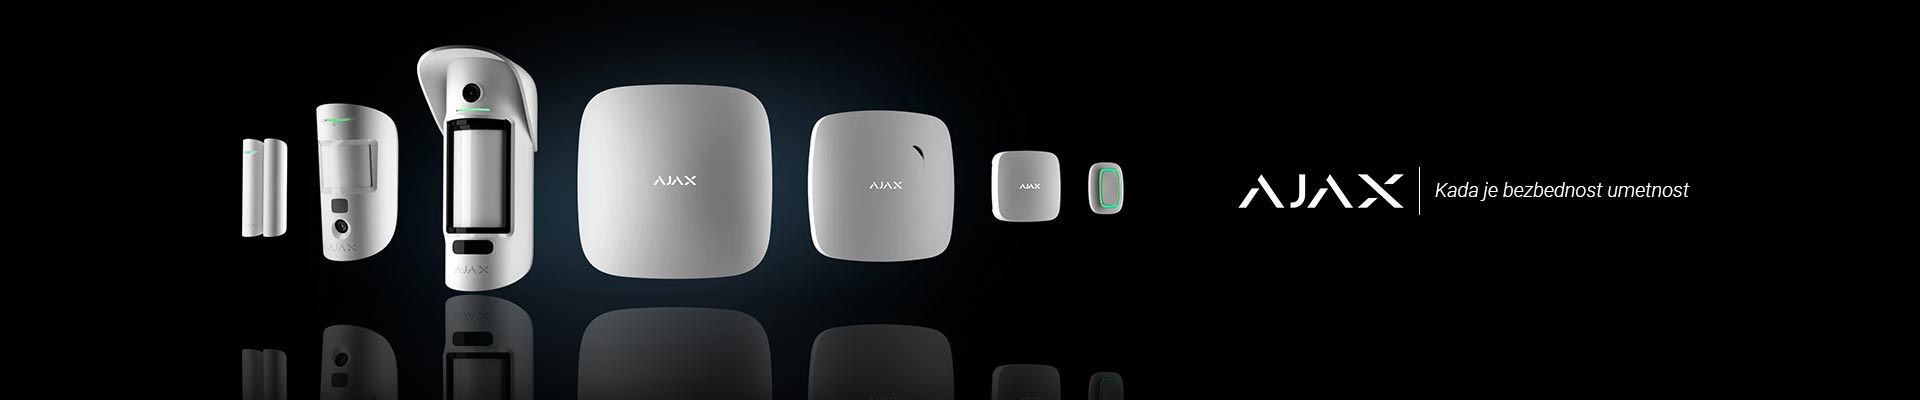 ajax alarm - bežični alarmni sistem